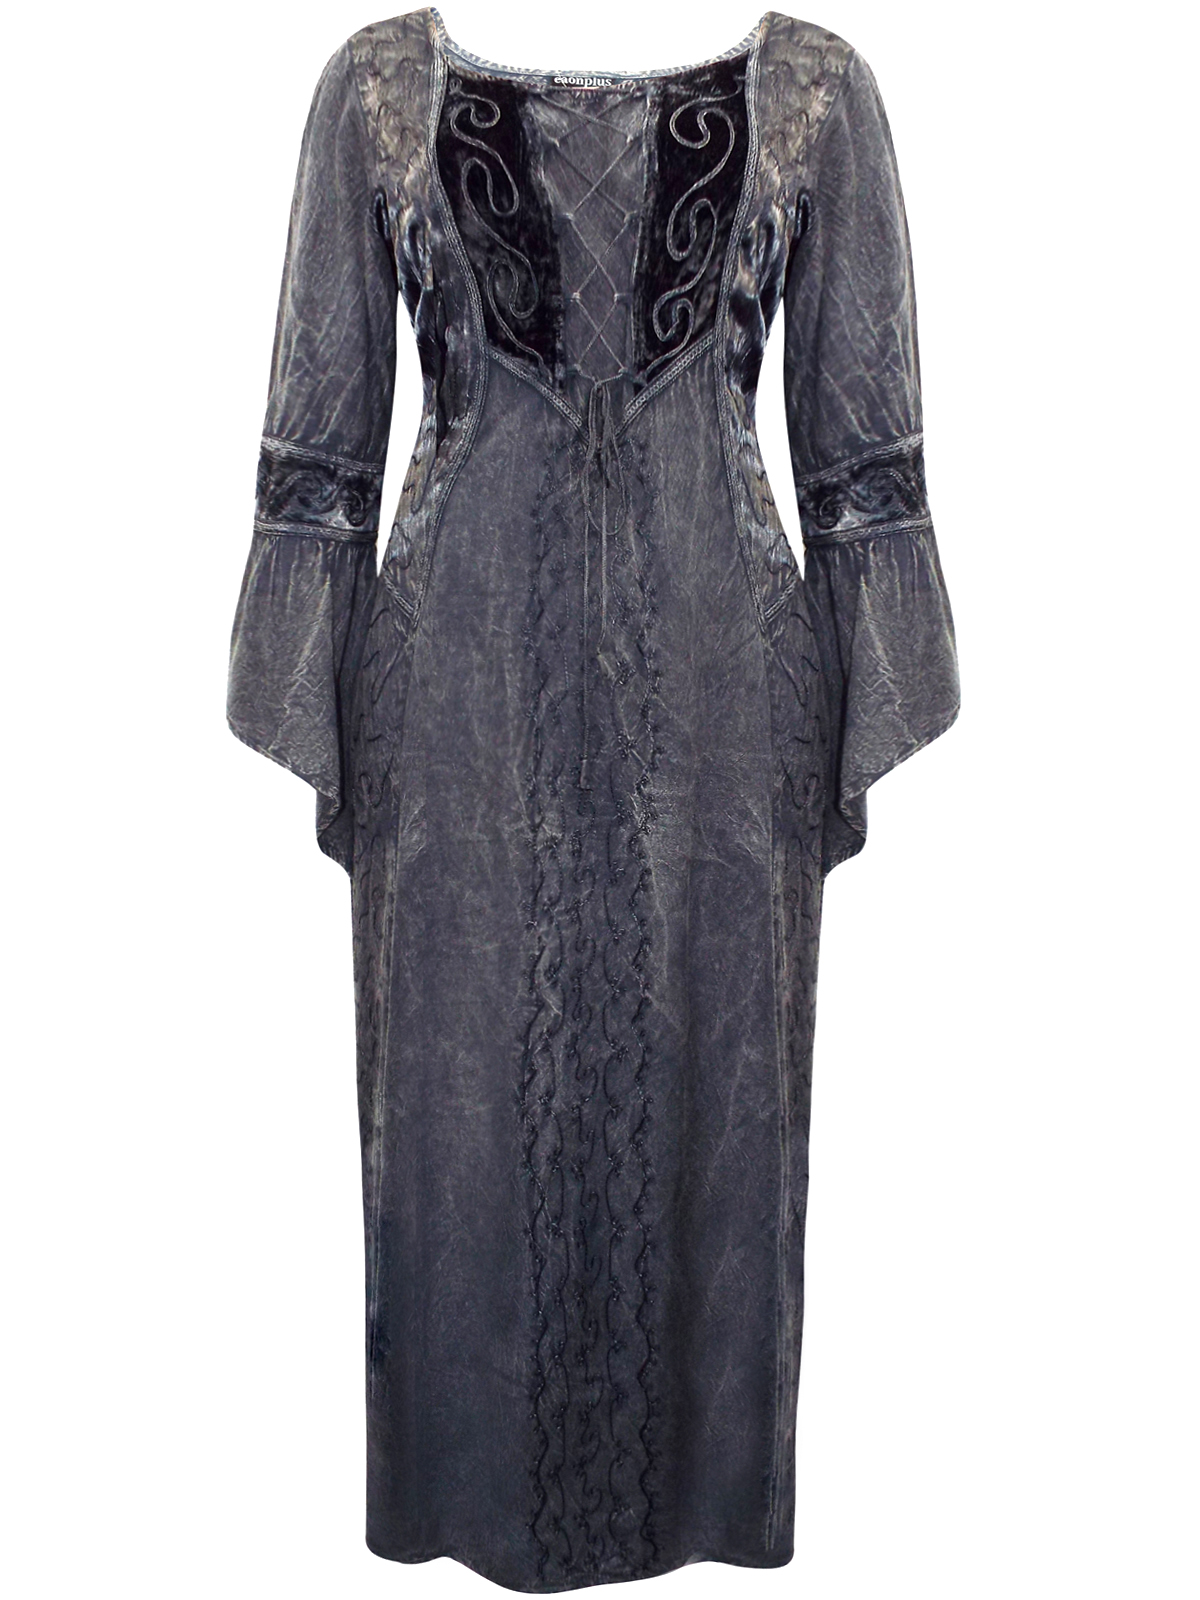 Eaonplus BLACK Dark Seduction Rayon Velvet Lace-Up Corset Dress Gown ...